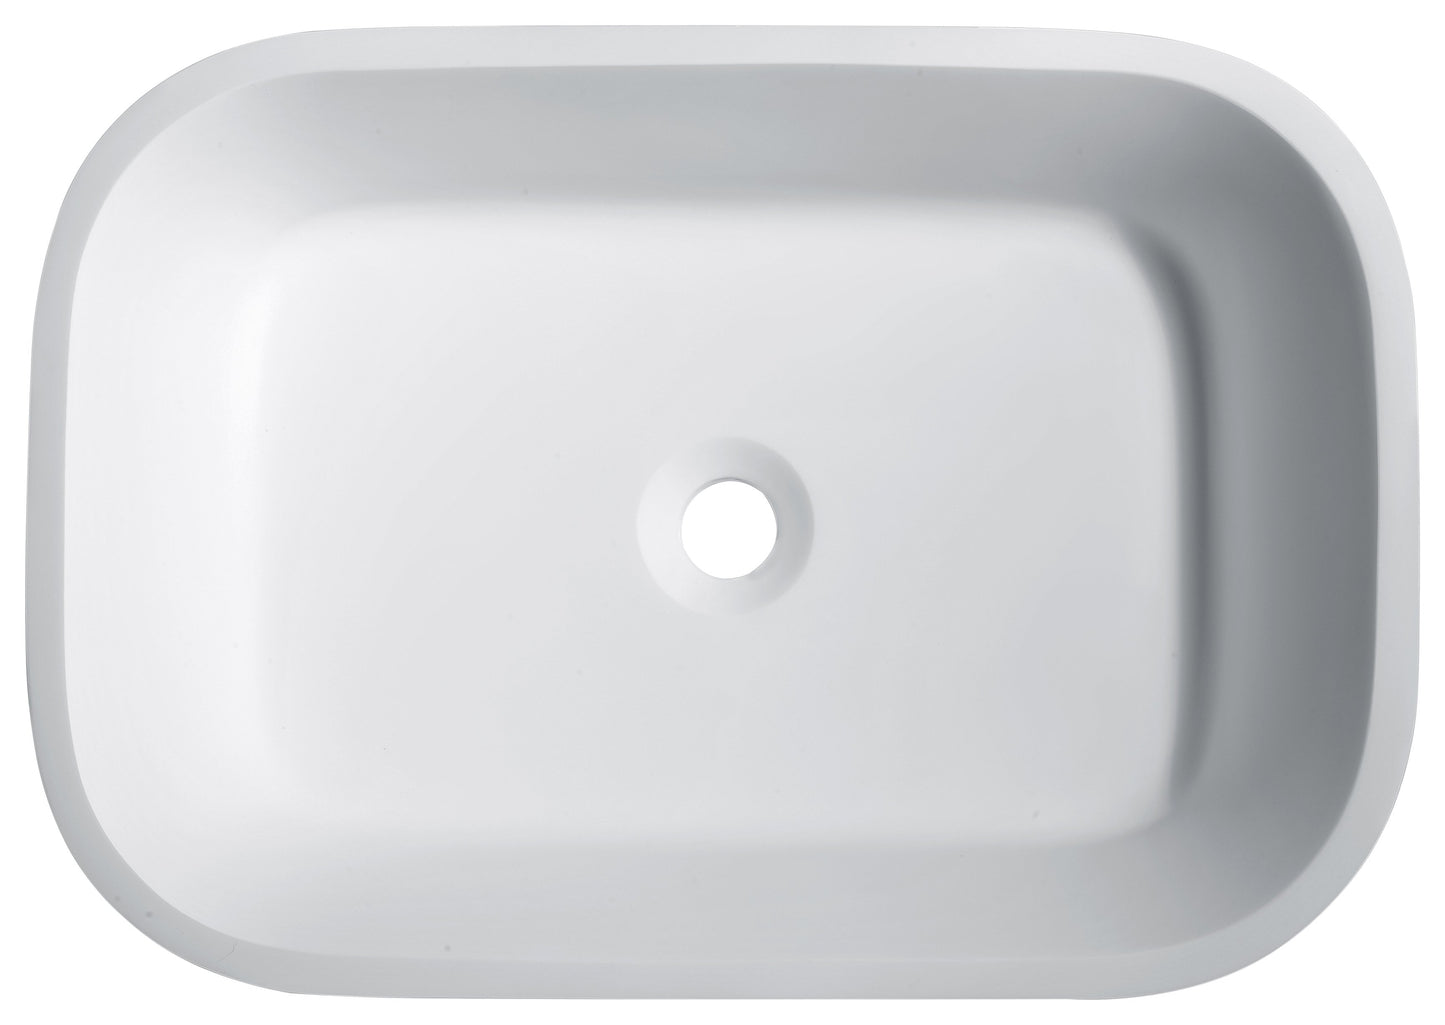 Ajeet Man Made Stone Vessel Sink in White - Luxe Bathroom Vanities